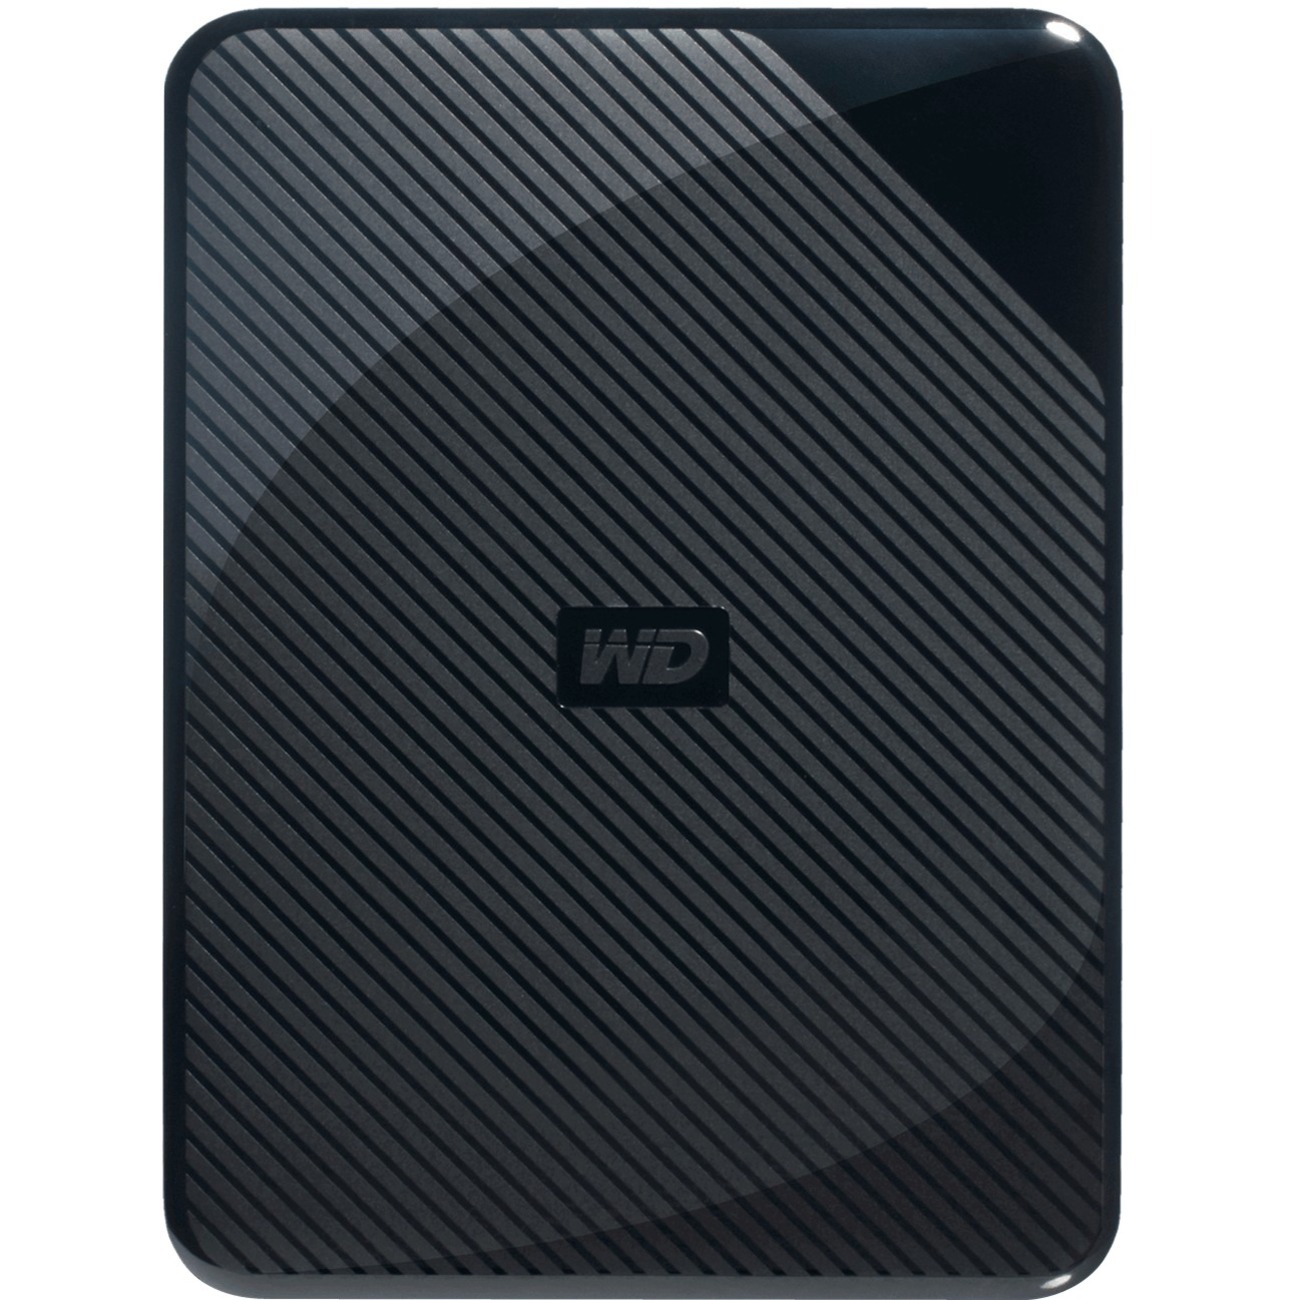 På forhånd linned forklare WD 2TB Gaming Drive Black External Hard Drive for Playstation/Xbox & PC -  USB 3.0 (WDBDFF0020BBK-WESN) - Newegg.com